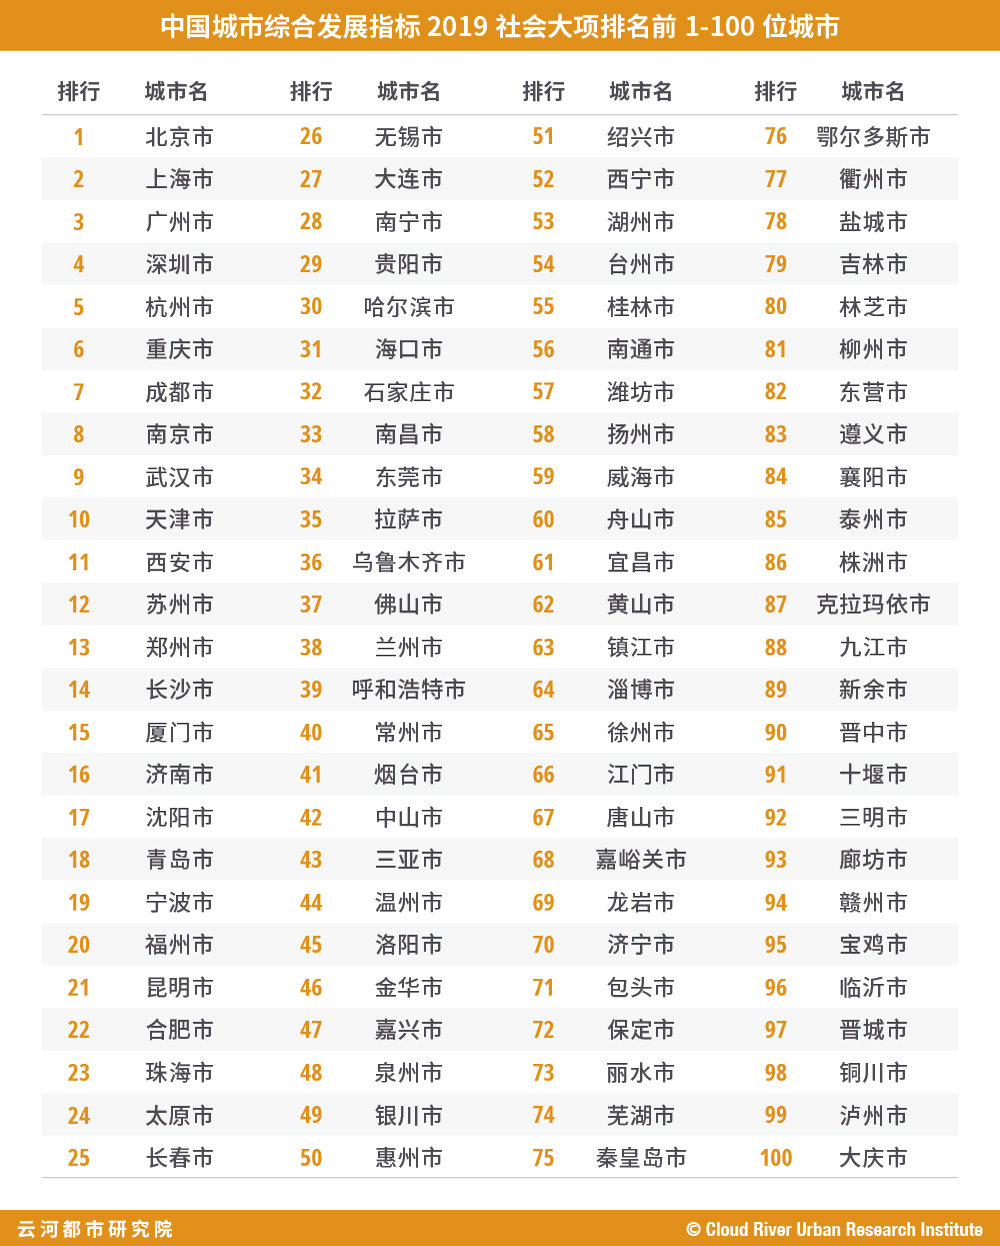 表 "中国城市综合发展指标2019"经济大项排名前1-100位城市